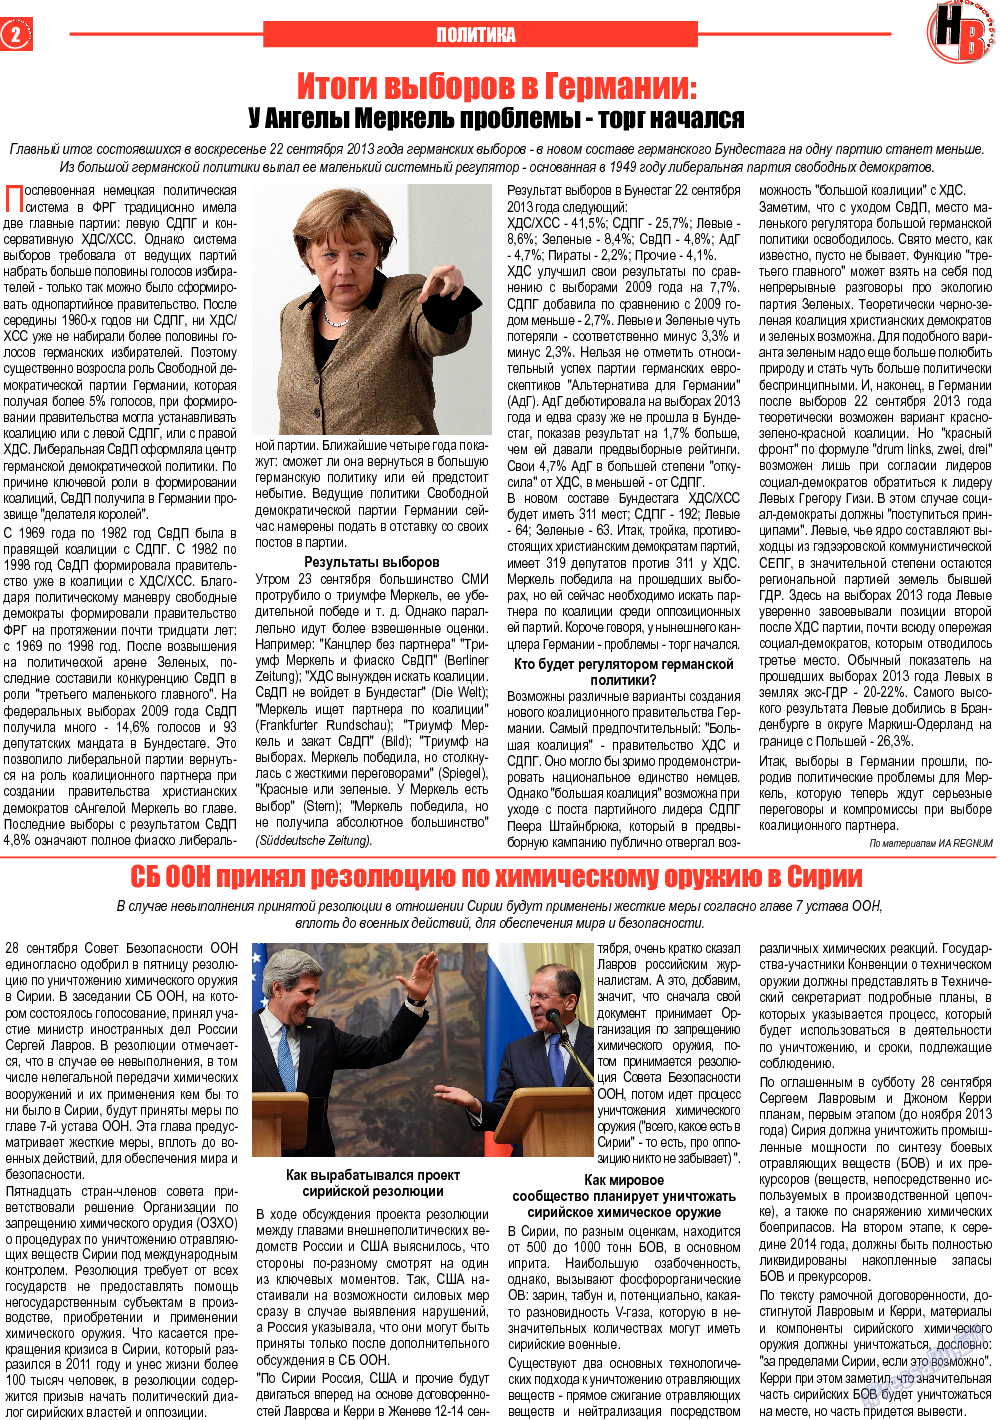 Наше время, газета. 2013 №10 стр.2